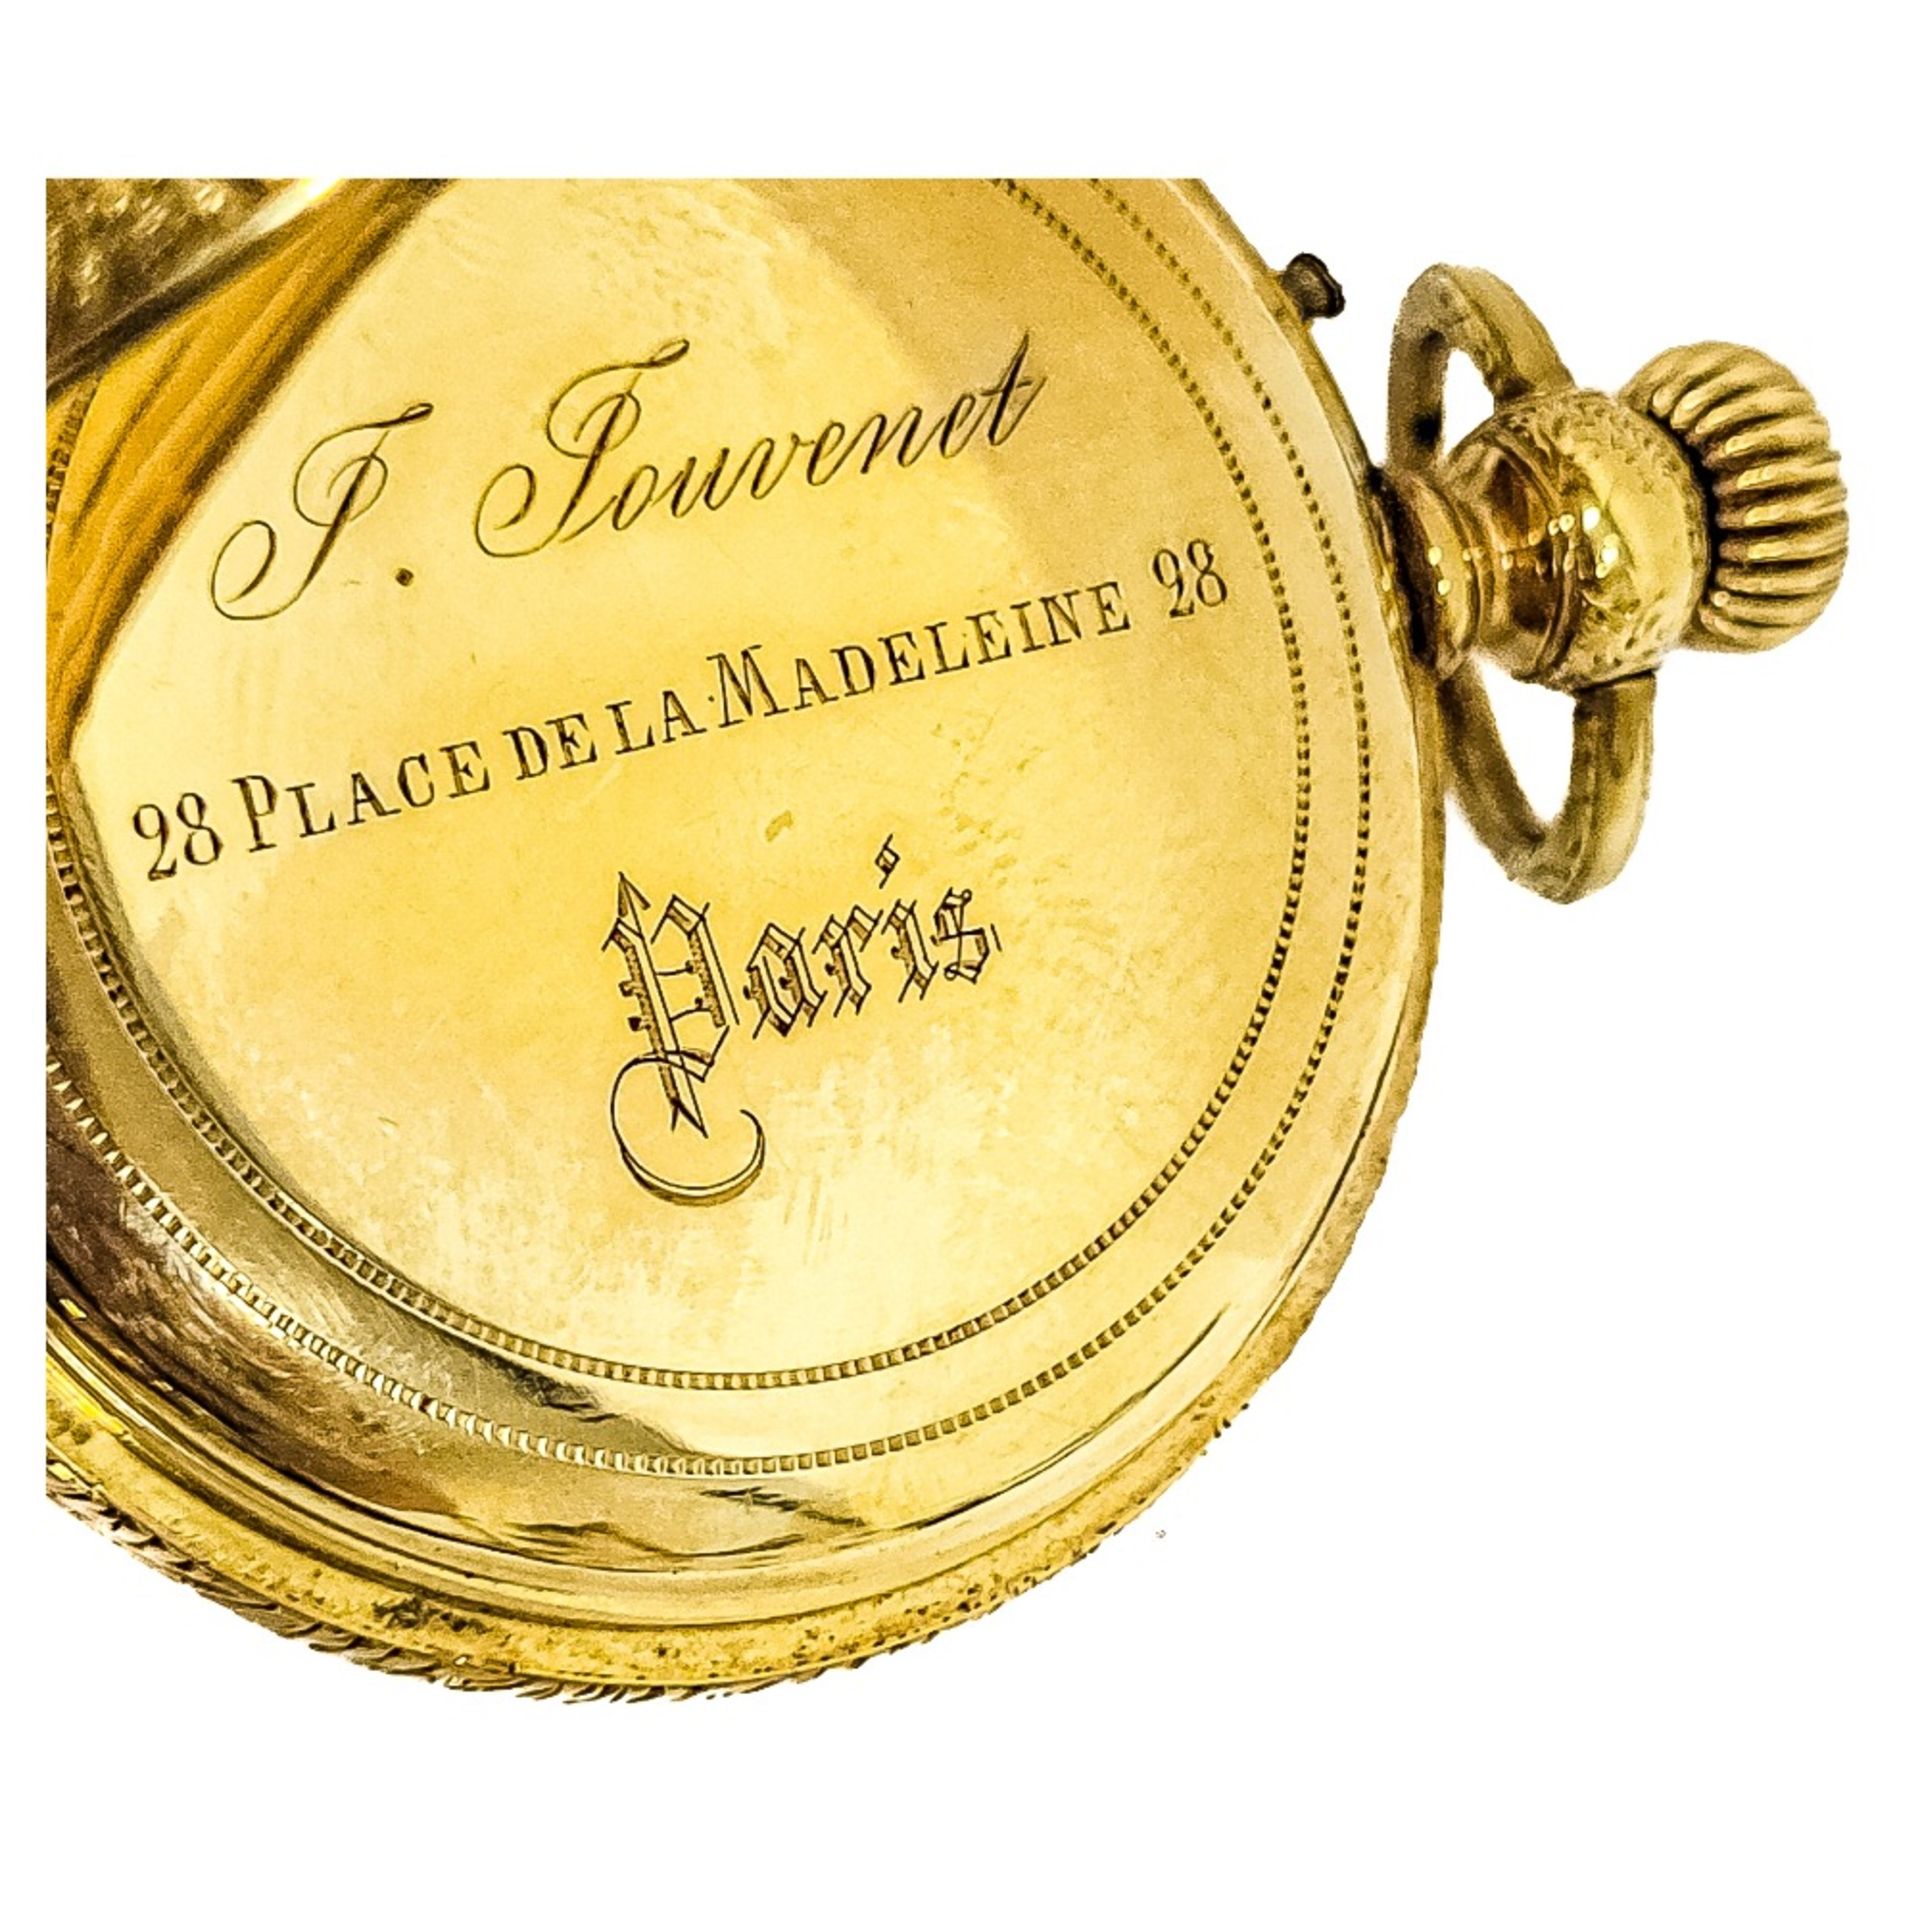 Reloj de bolsillo saboneta en oro. Francia, fles. del s.XIX. - Image 2 of 4